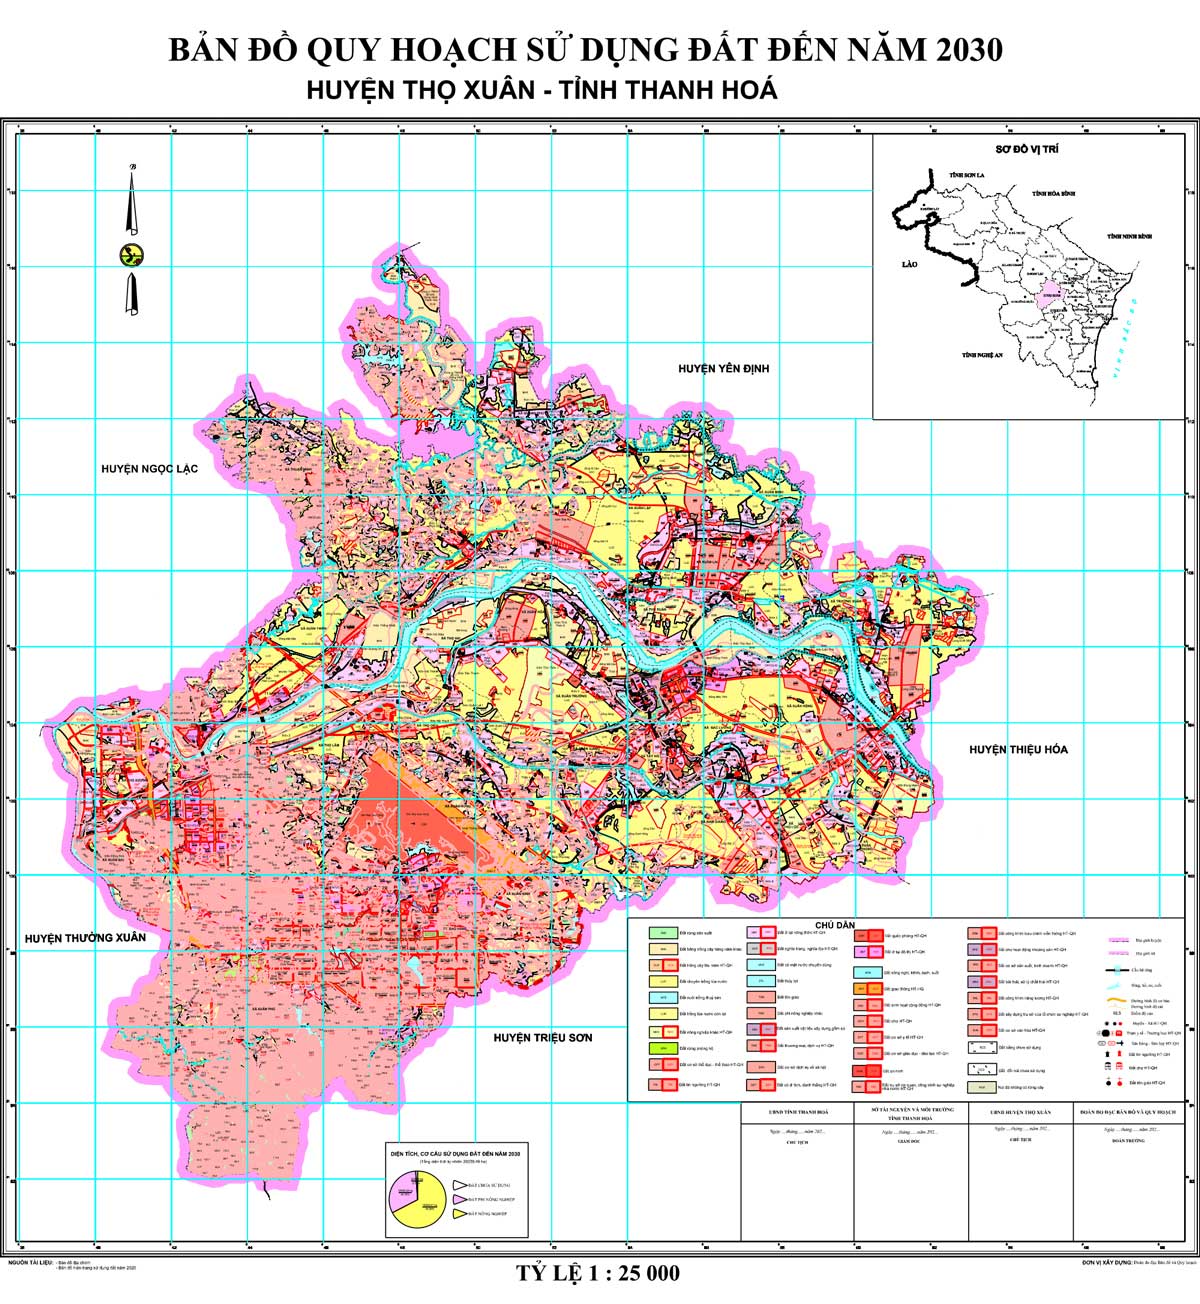 Bản đồ QHSDĐ huyện Thọ Xuân đến năm 2030